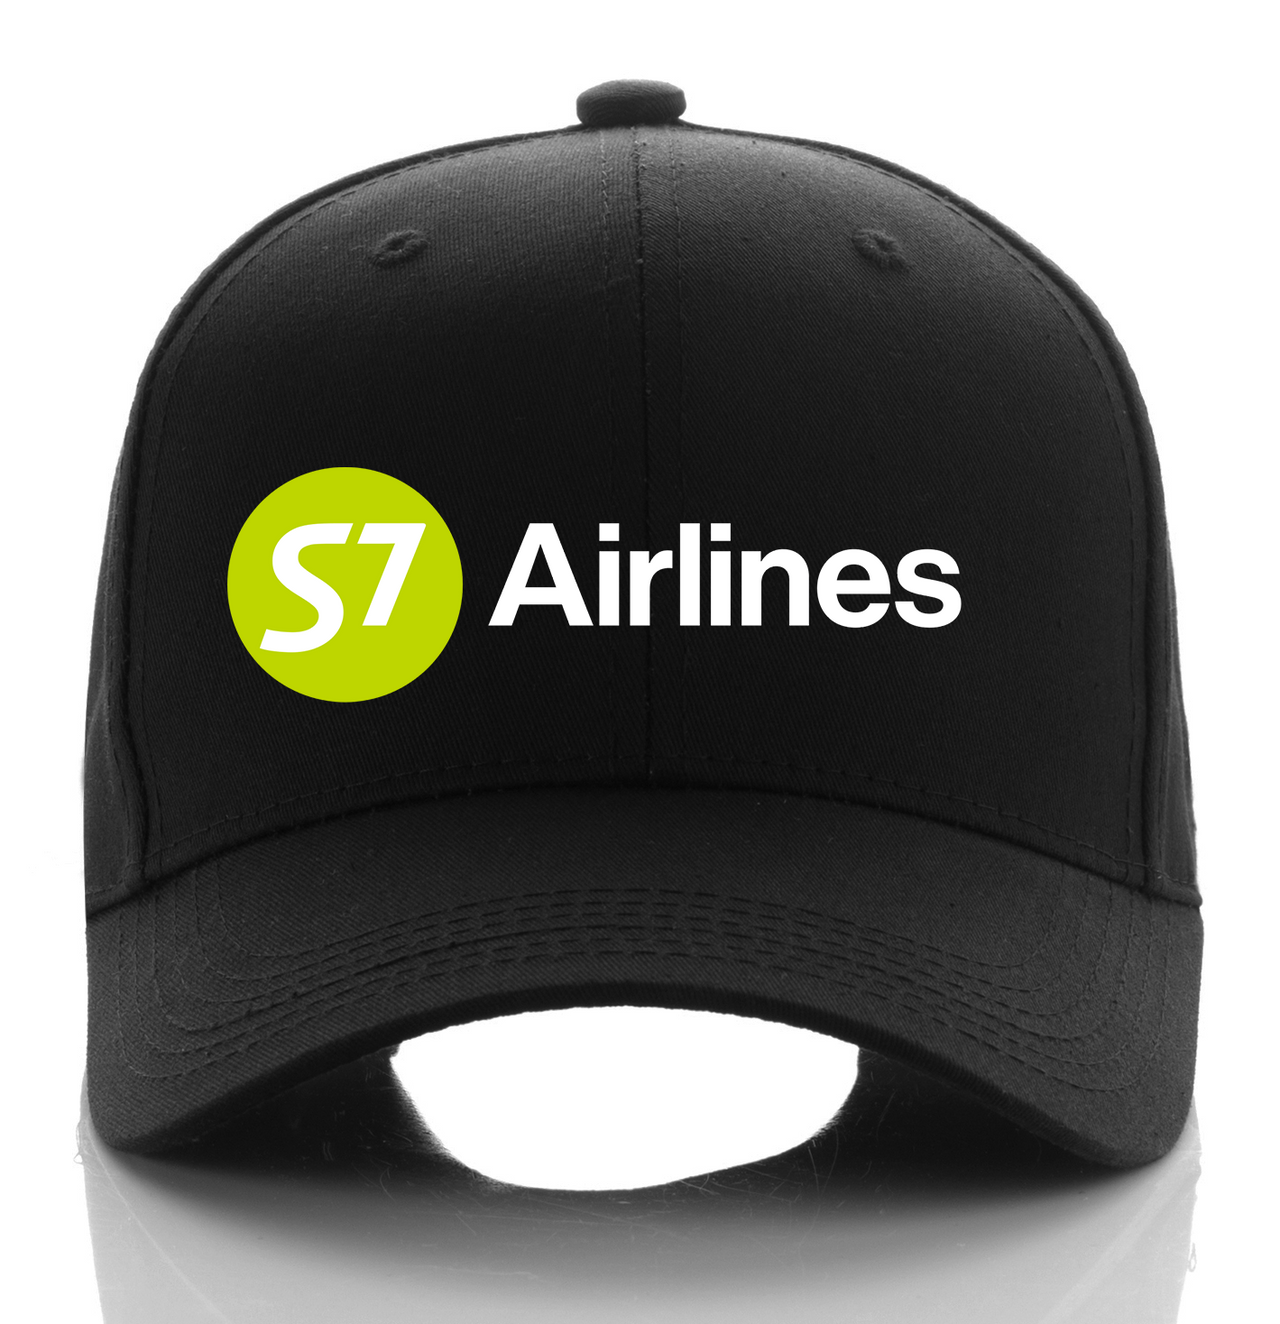 S7 AIRLINE DESIGNED CAP